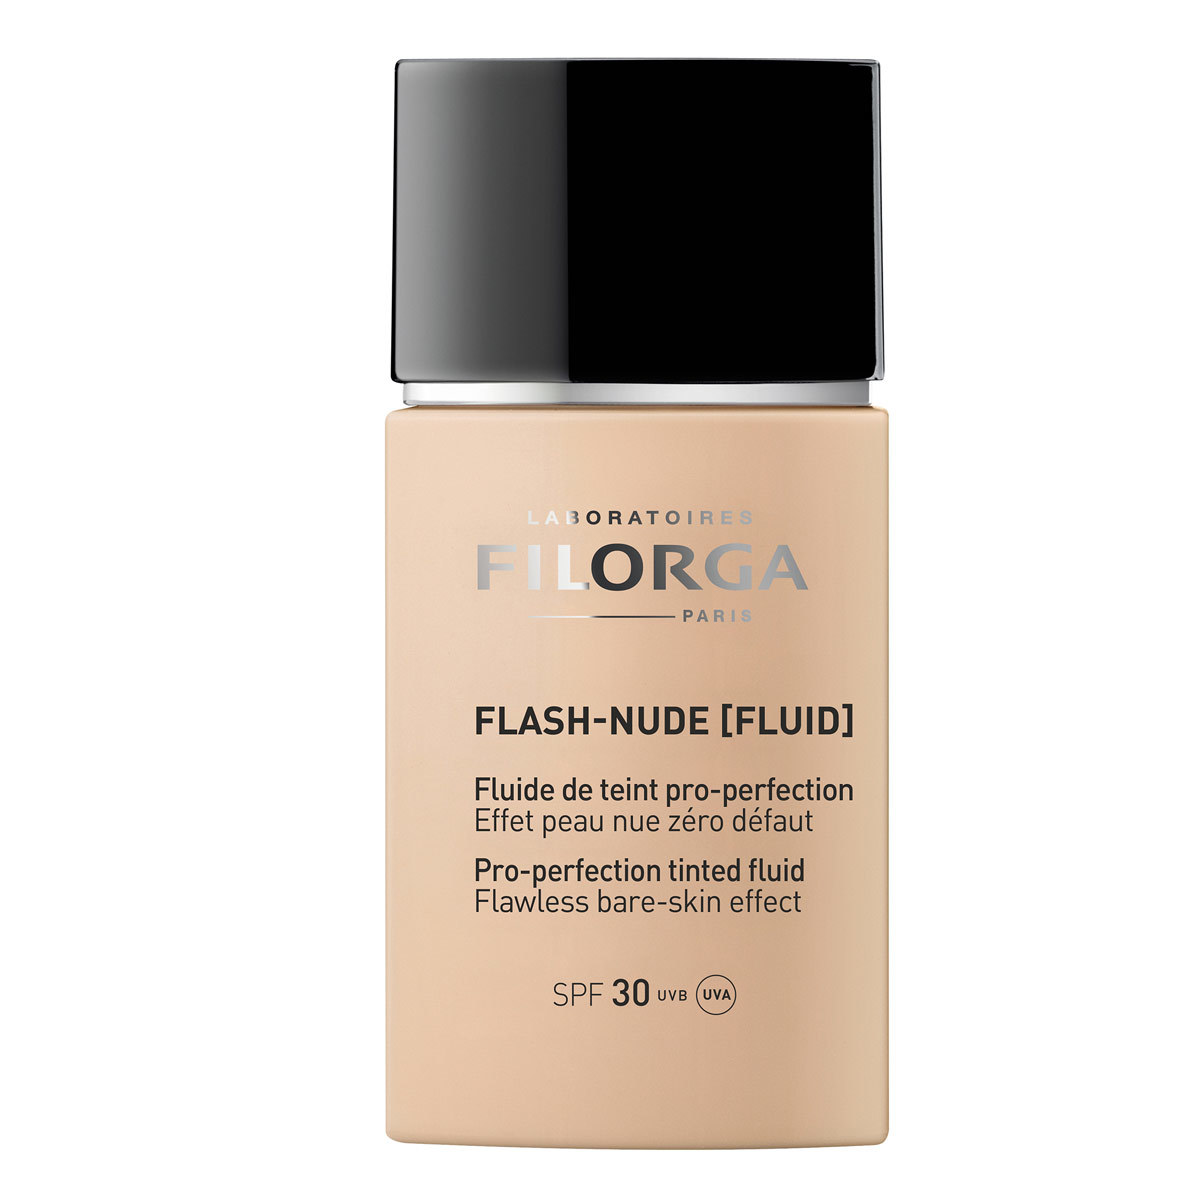 Base de maquillaje antiedad con ácido hialurónico Flash Nude Fluid, Filorga (36,90 euros).